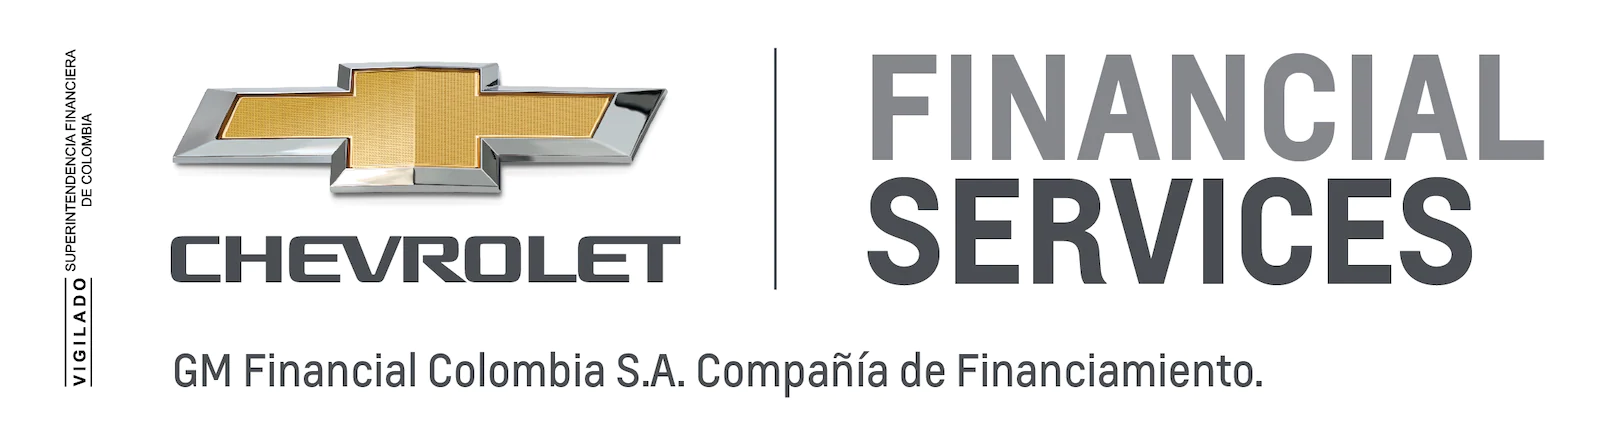 Concesionario Chevrolet  - Financial Services